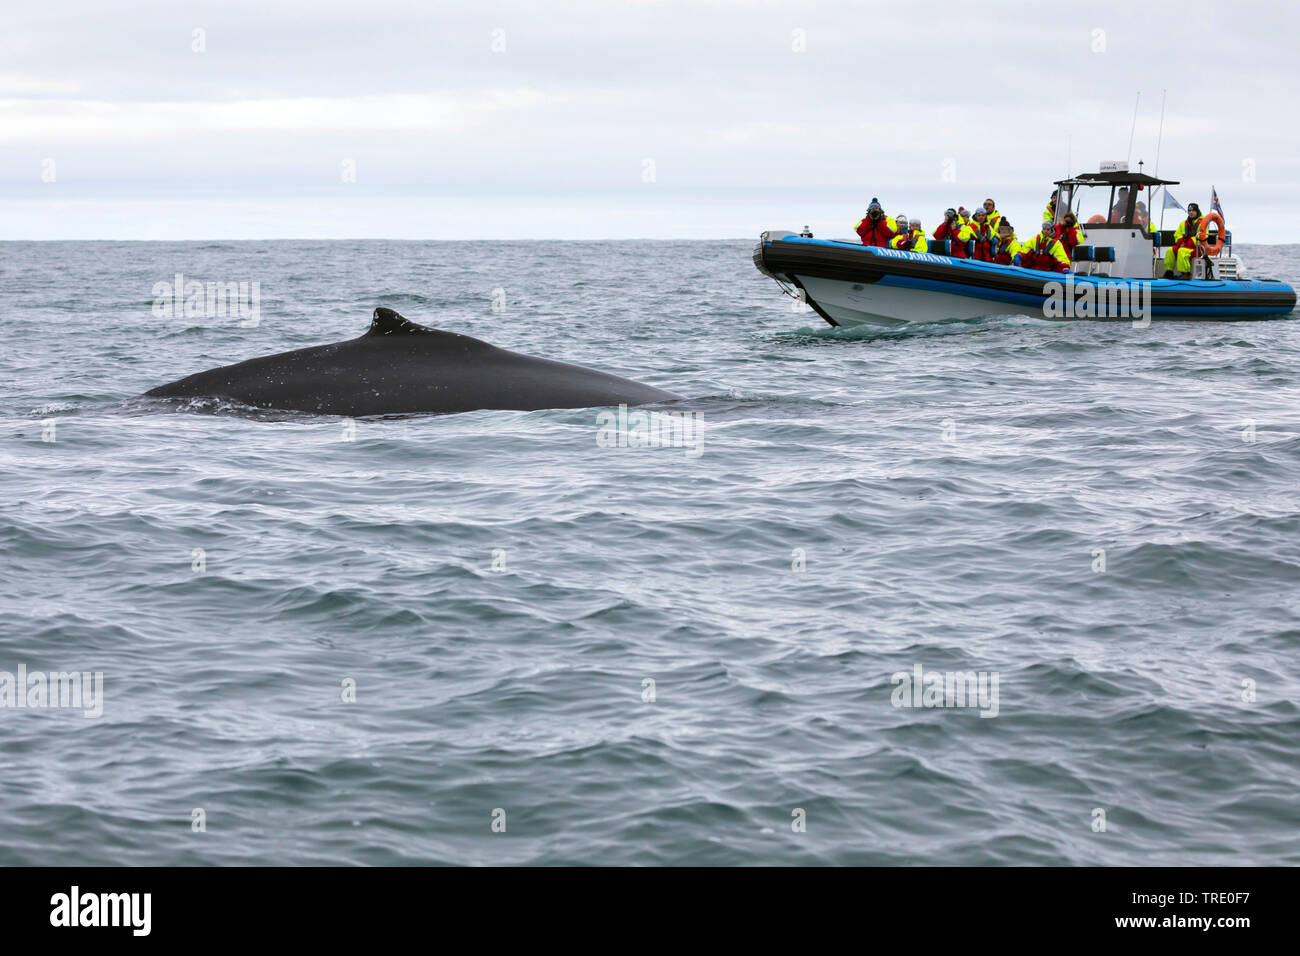 La ballena jorobada (Megaptera novaeangliae), turistas en un bote de goma observando una ballena, Islandia Foto de stock